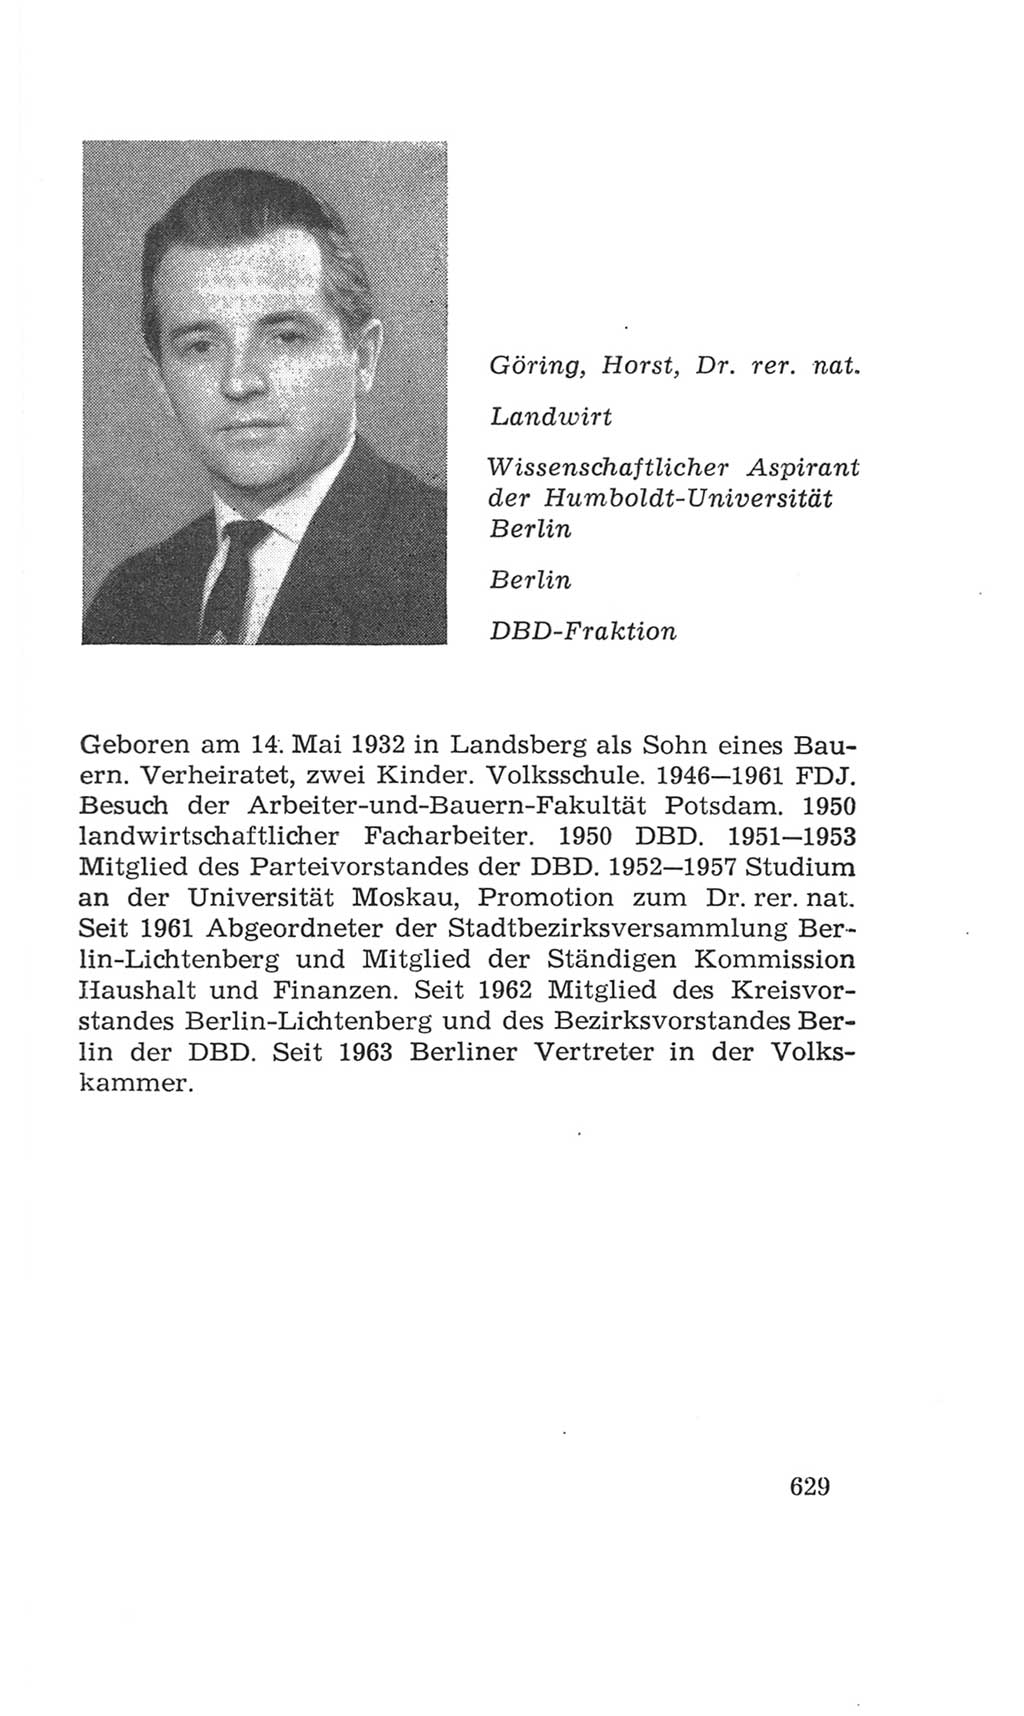 Volkskammer (VK) der Deutschen Demokratischen Republik (DDR), 4. Wahlperiode 1963-1967, Seite 629 (VK. DDR 4. WP. 1963-1967, S. 629)